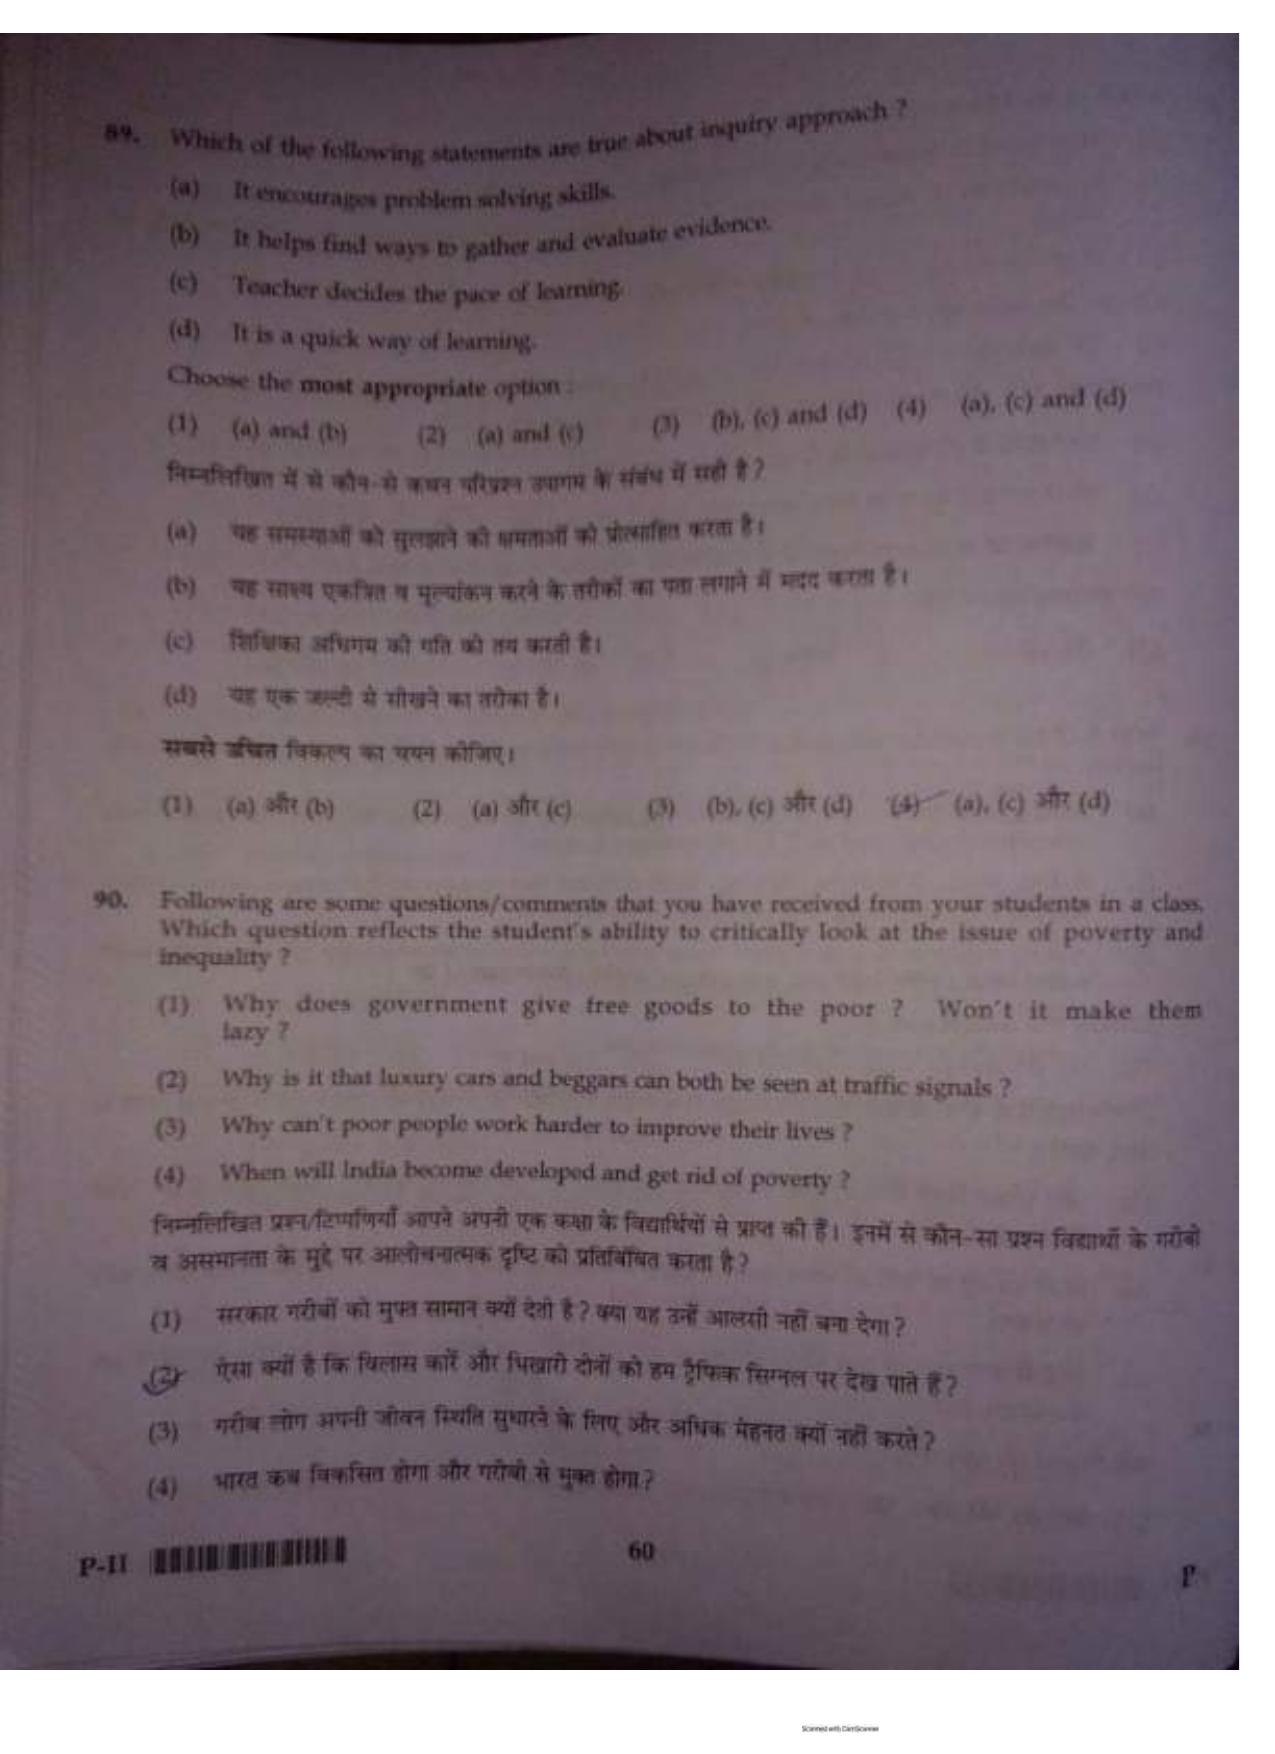 ctet paper 2 question paper SET P - Page 59